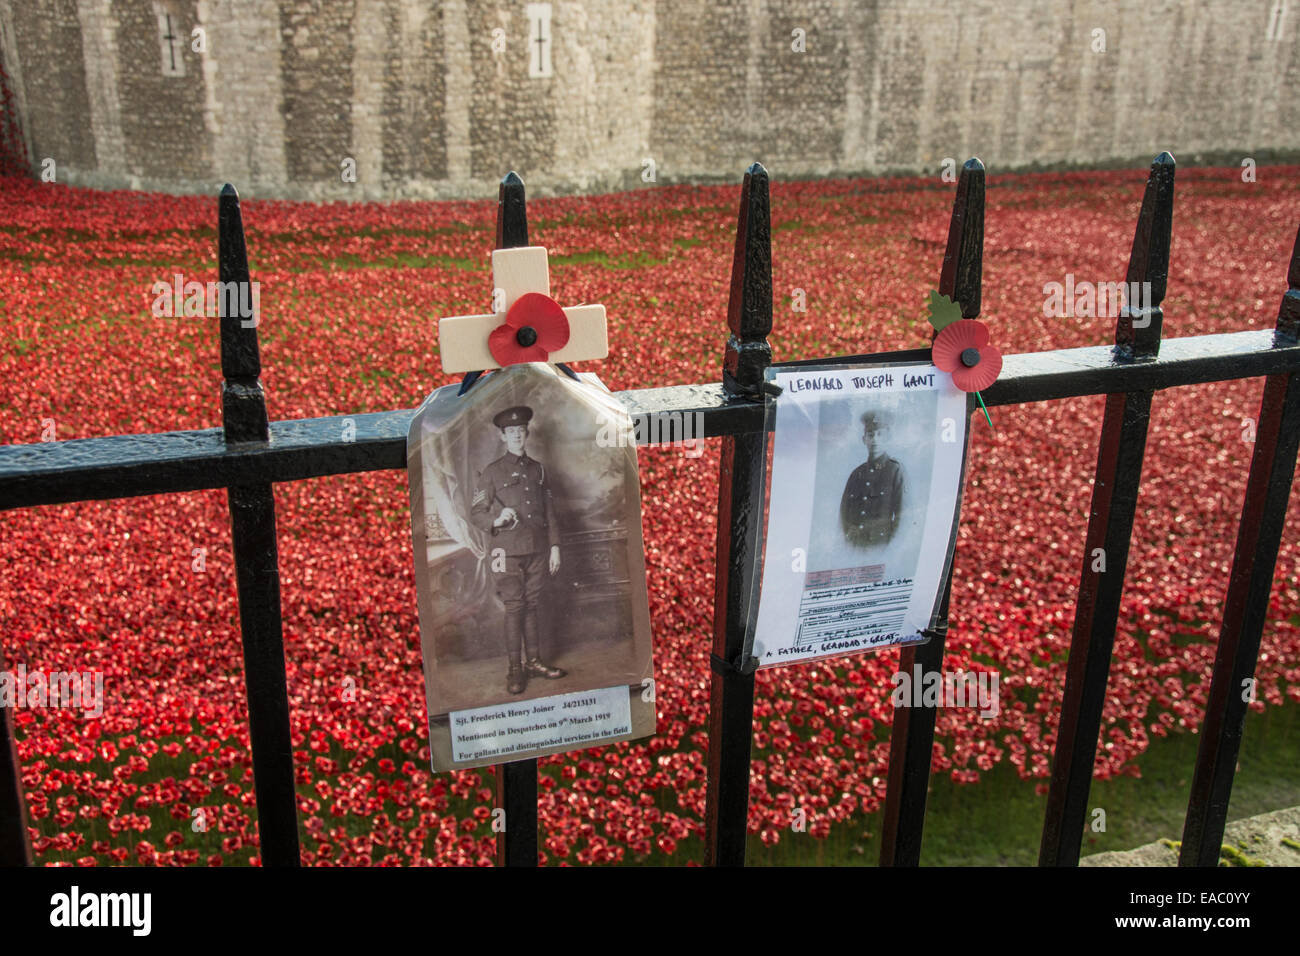 Hommages aux soldats tués à la guerre. Tour de Londres, Angleterre. Novembre 2014 Banque D'Images